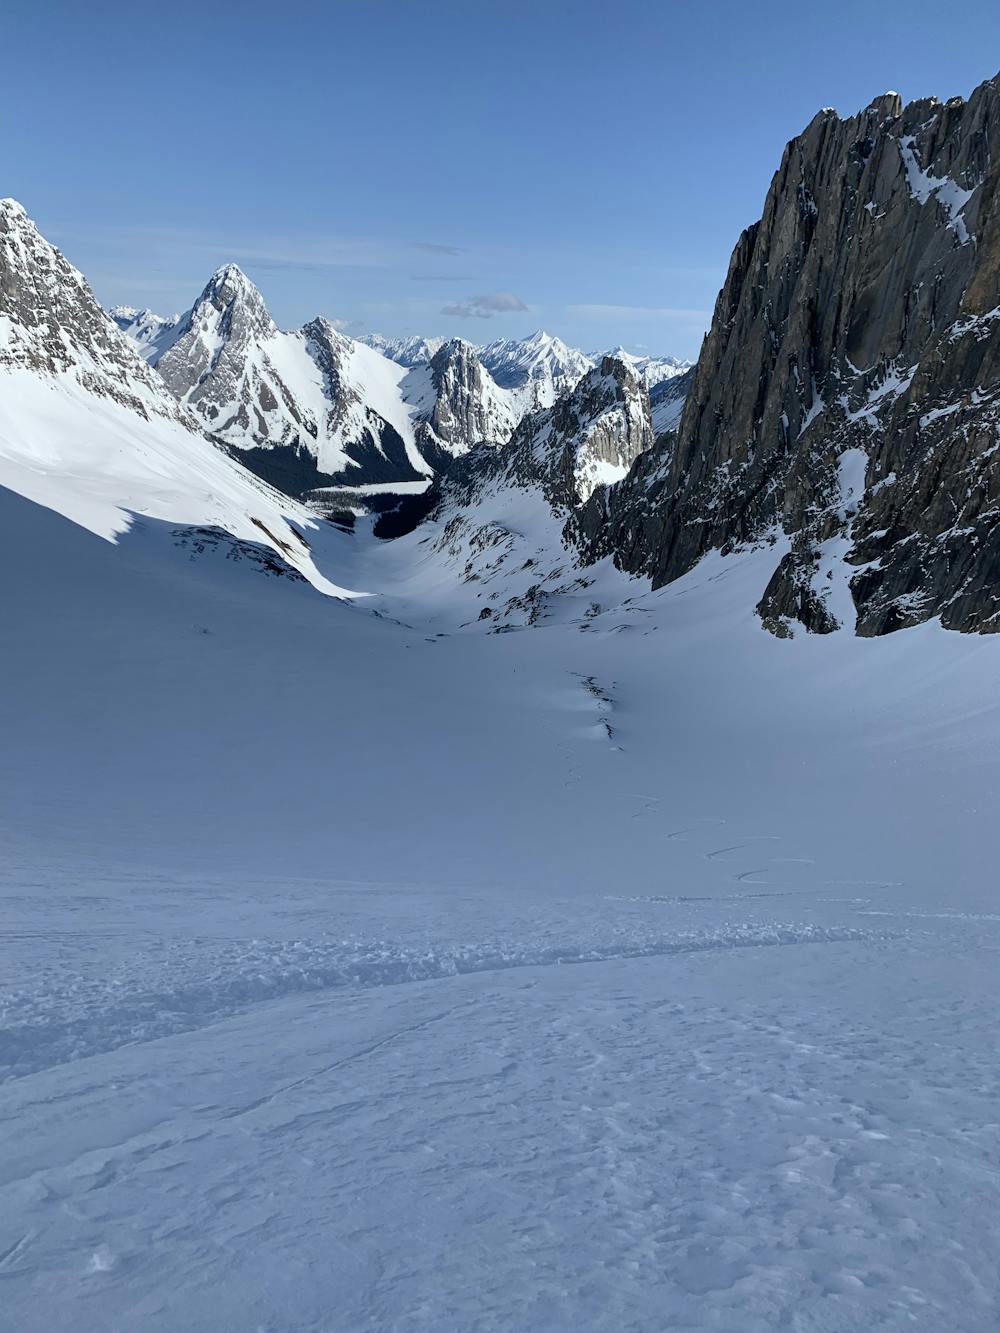 The ski down the Robertson Glacier